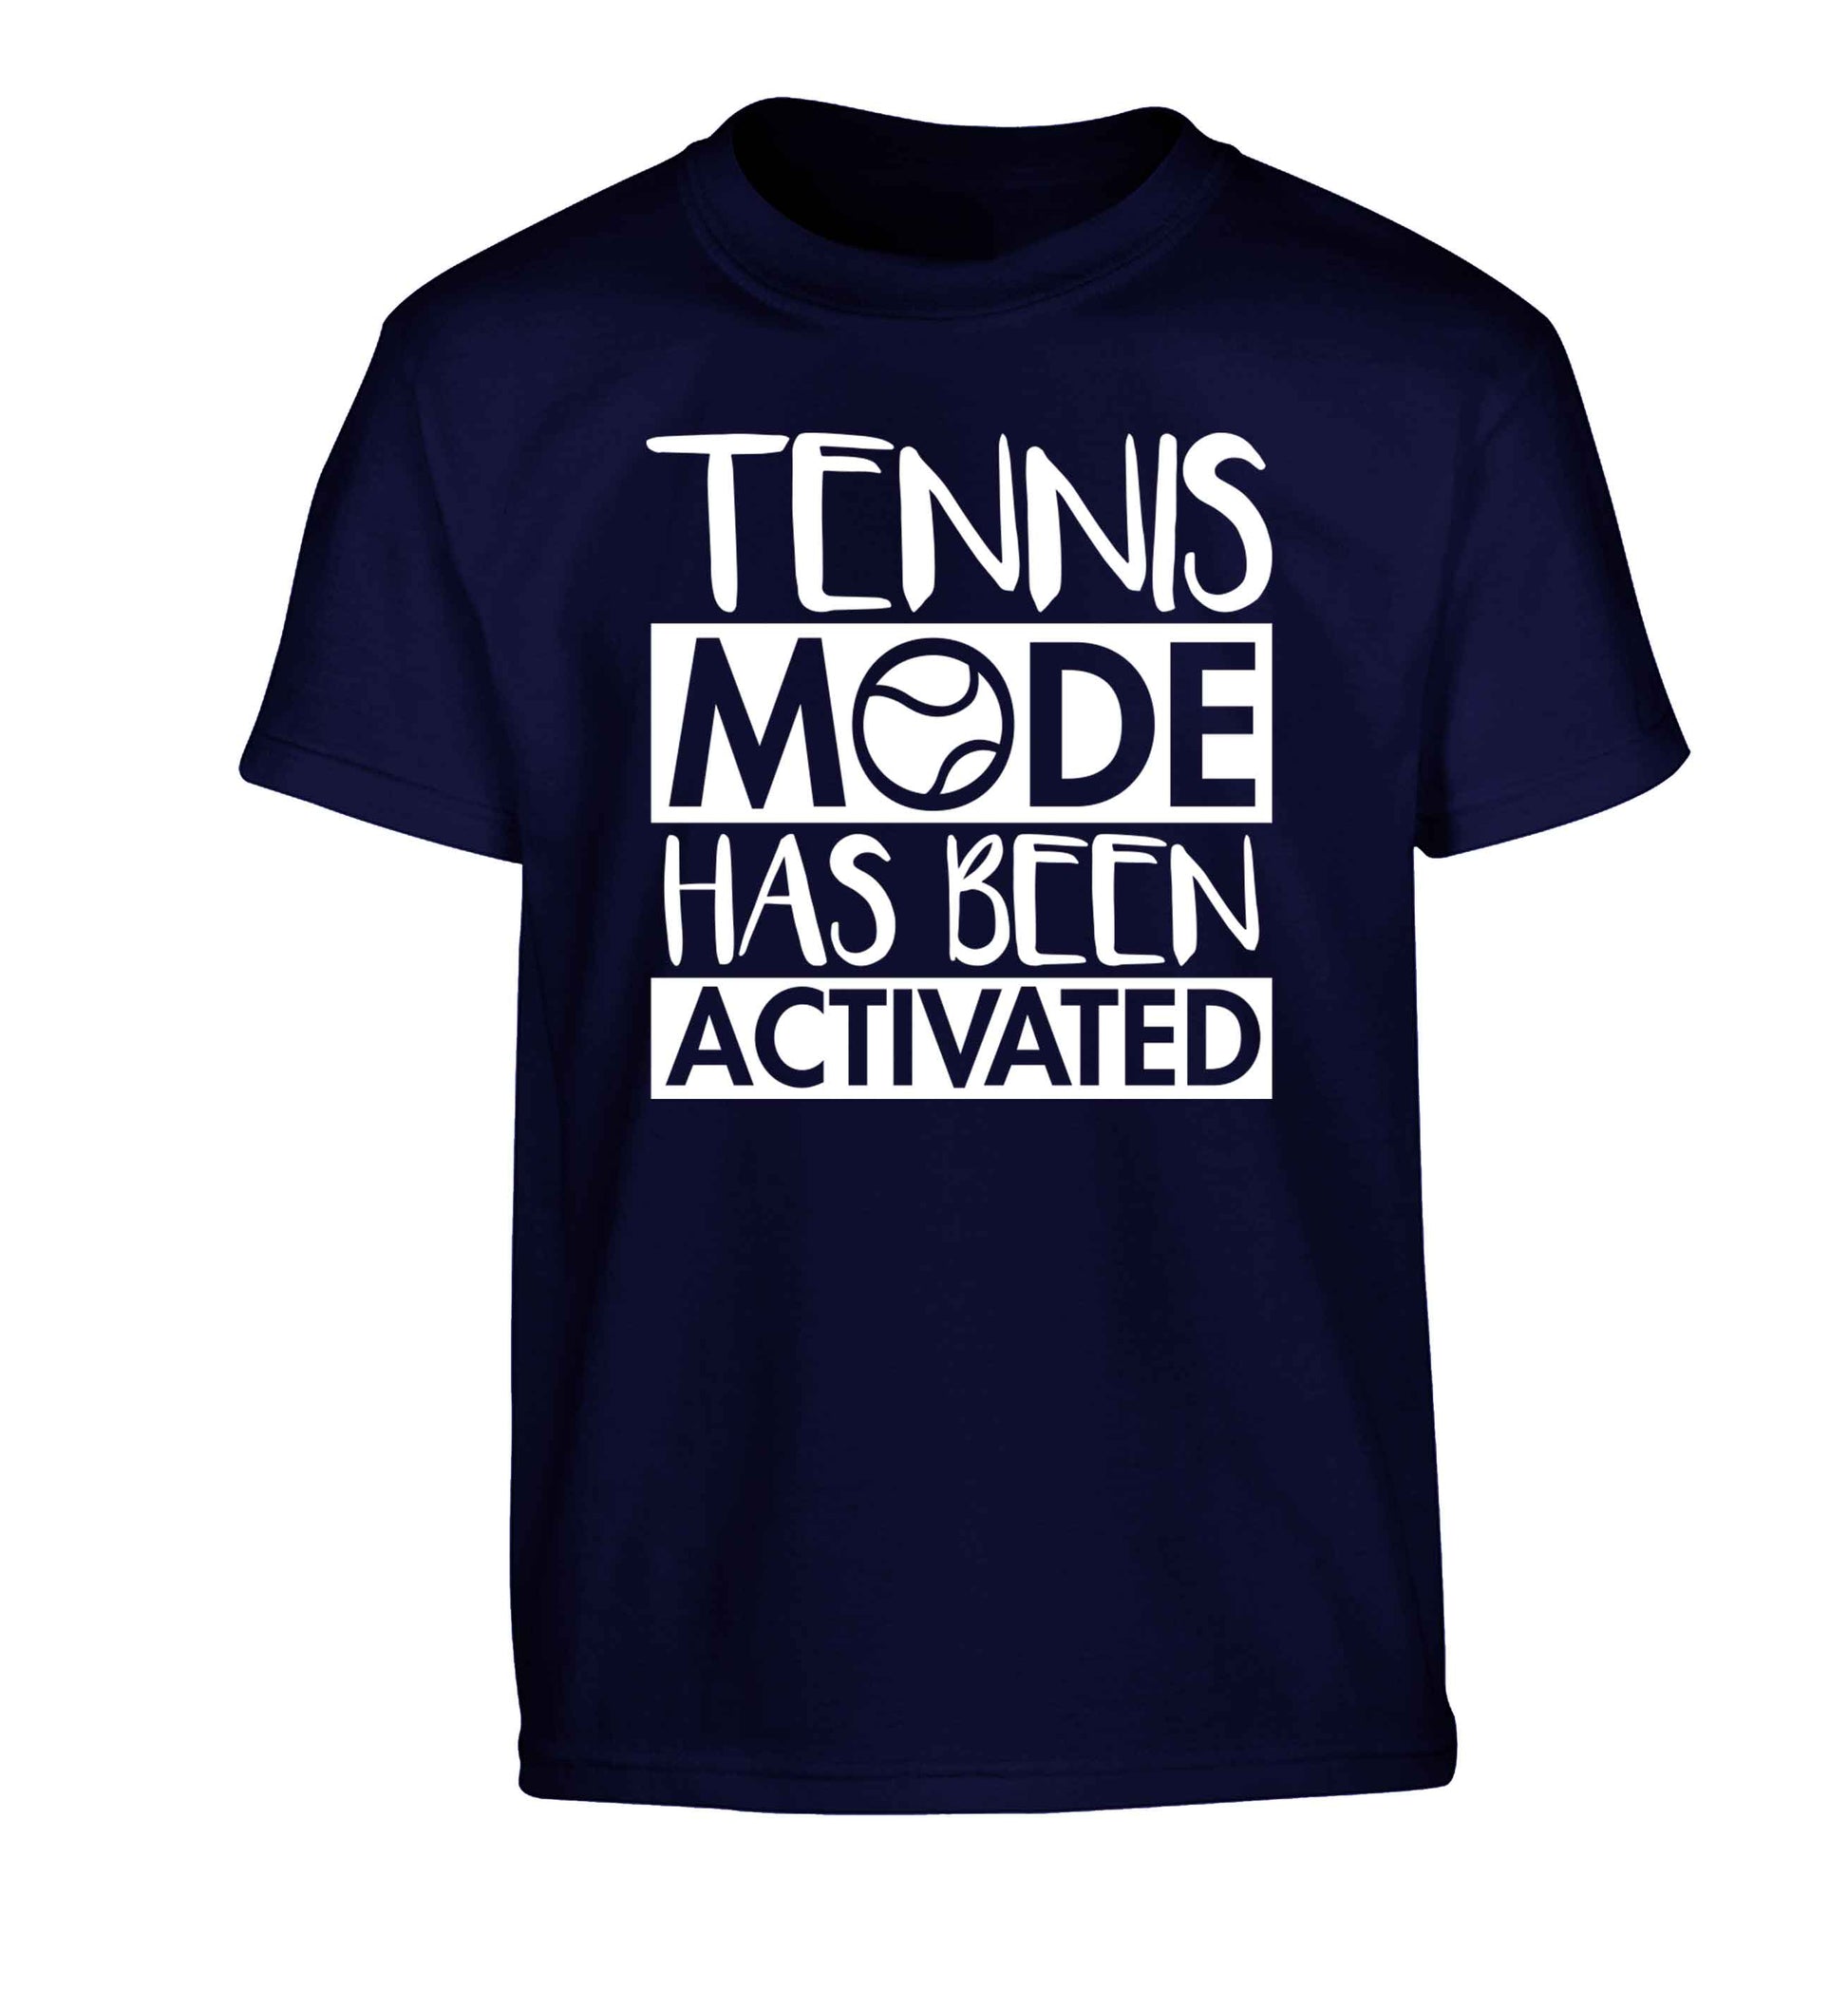 Tennis mode has been activated Children's navy Tshirt 12-13 Years